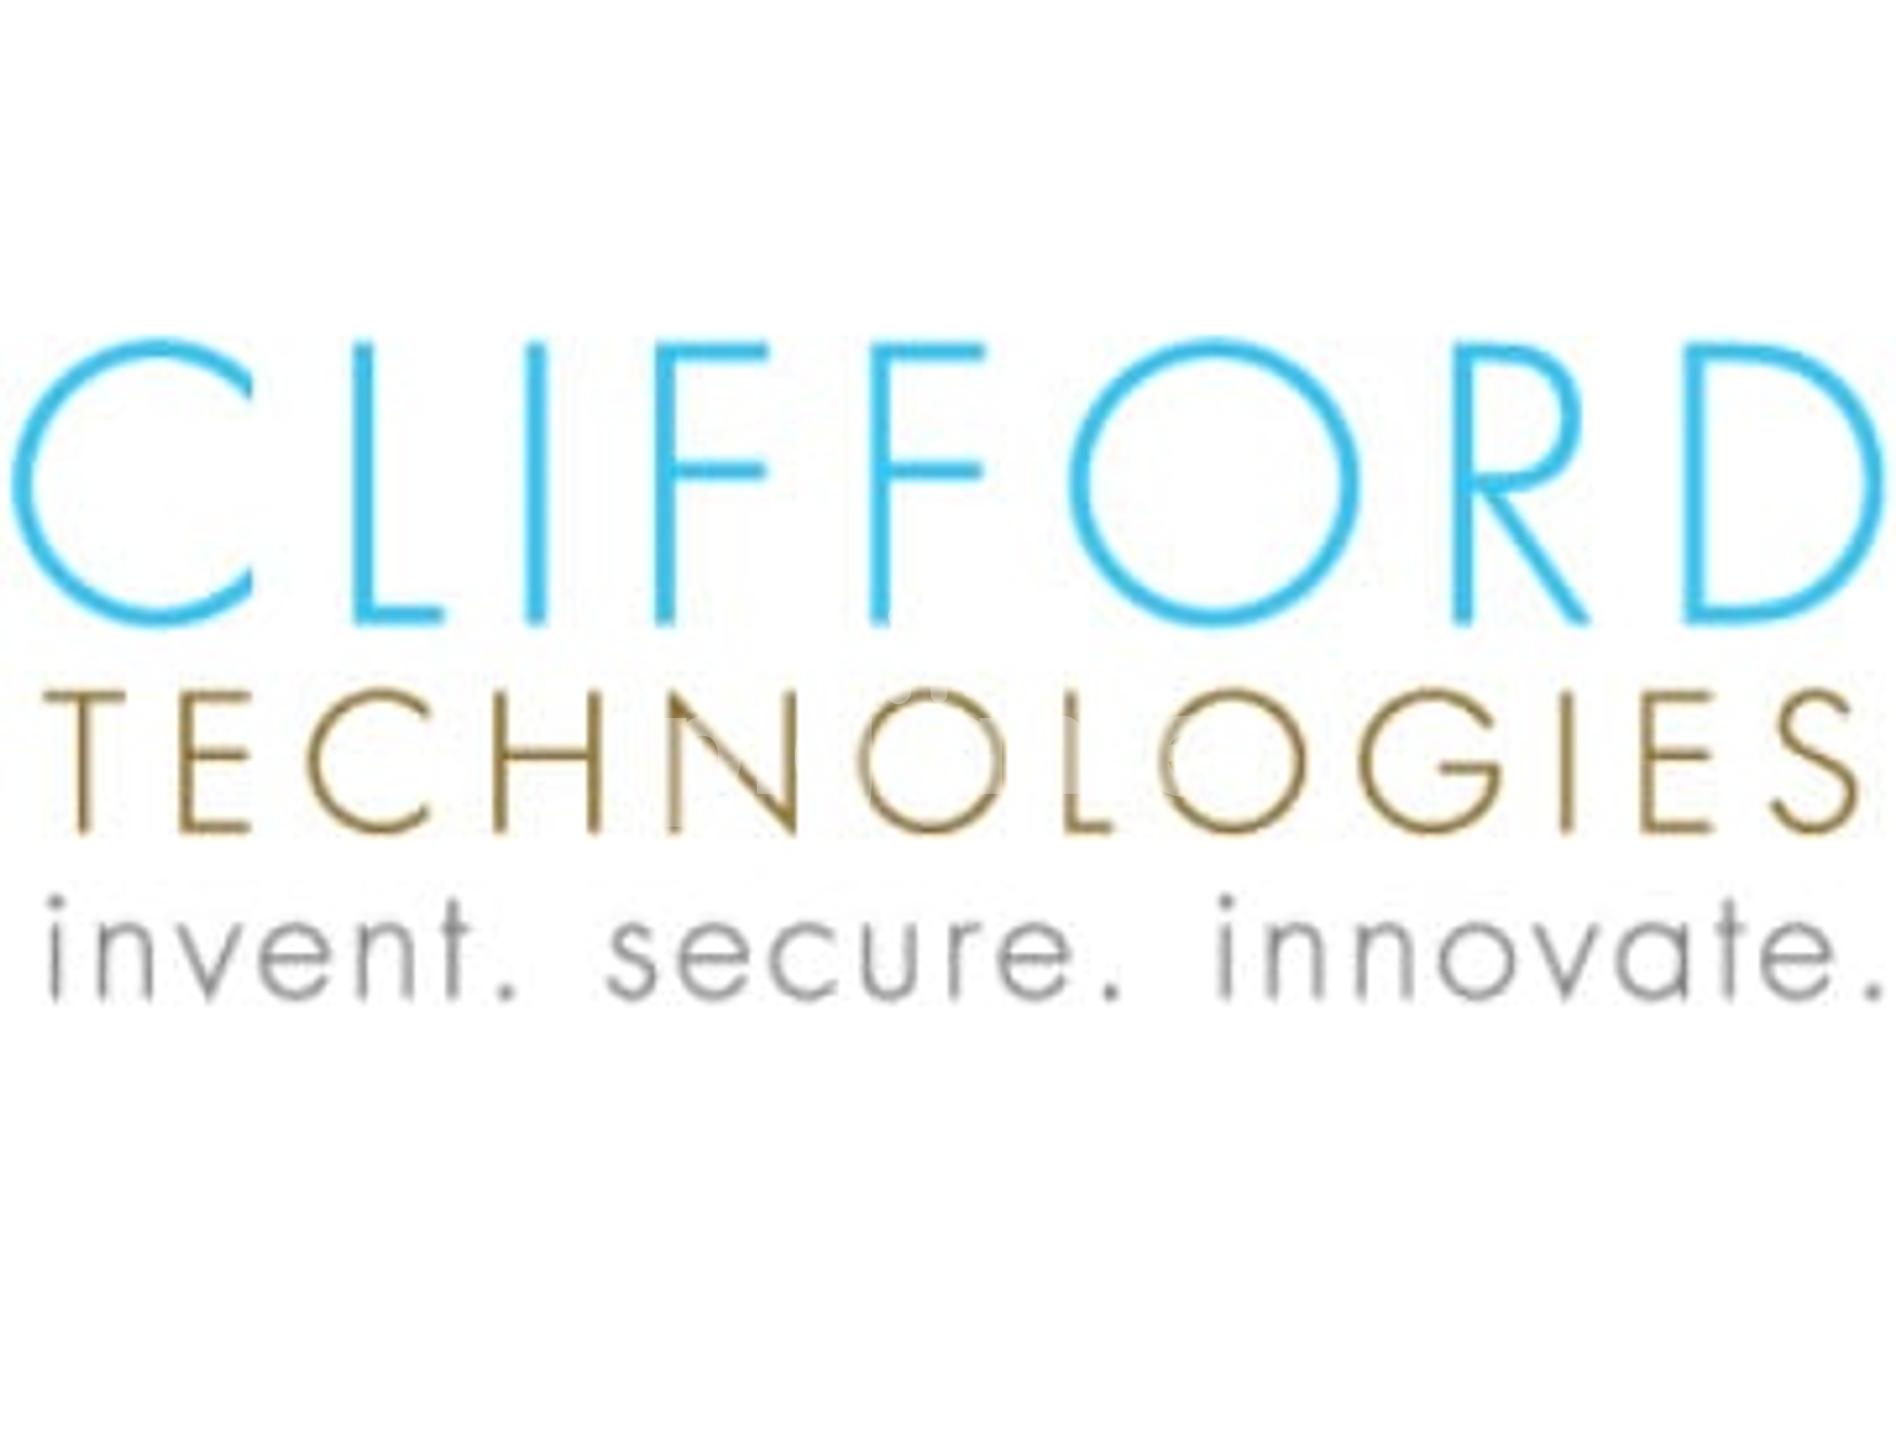 Clifford Technologies Ltd